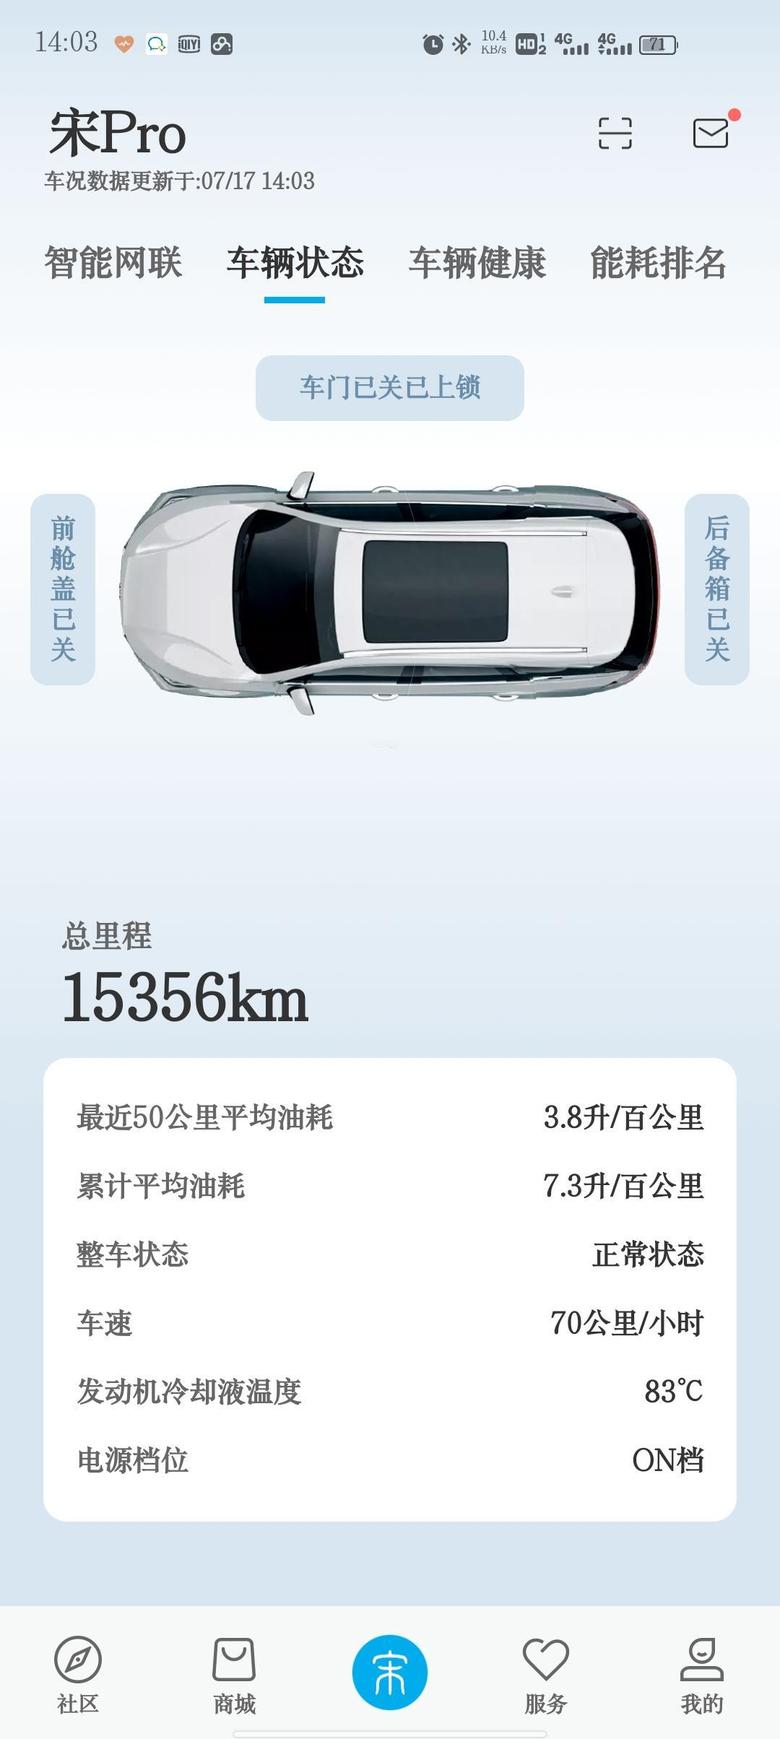 宋pro购车一年，京津冀的跑一跑，通勤每天12公里（上下班）。1.5w平均油耗7.3，最近50公里跑隧道限速七十，还跑出了3.8的成绩。毕竟这么大车，反正我是挺满意的了